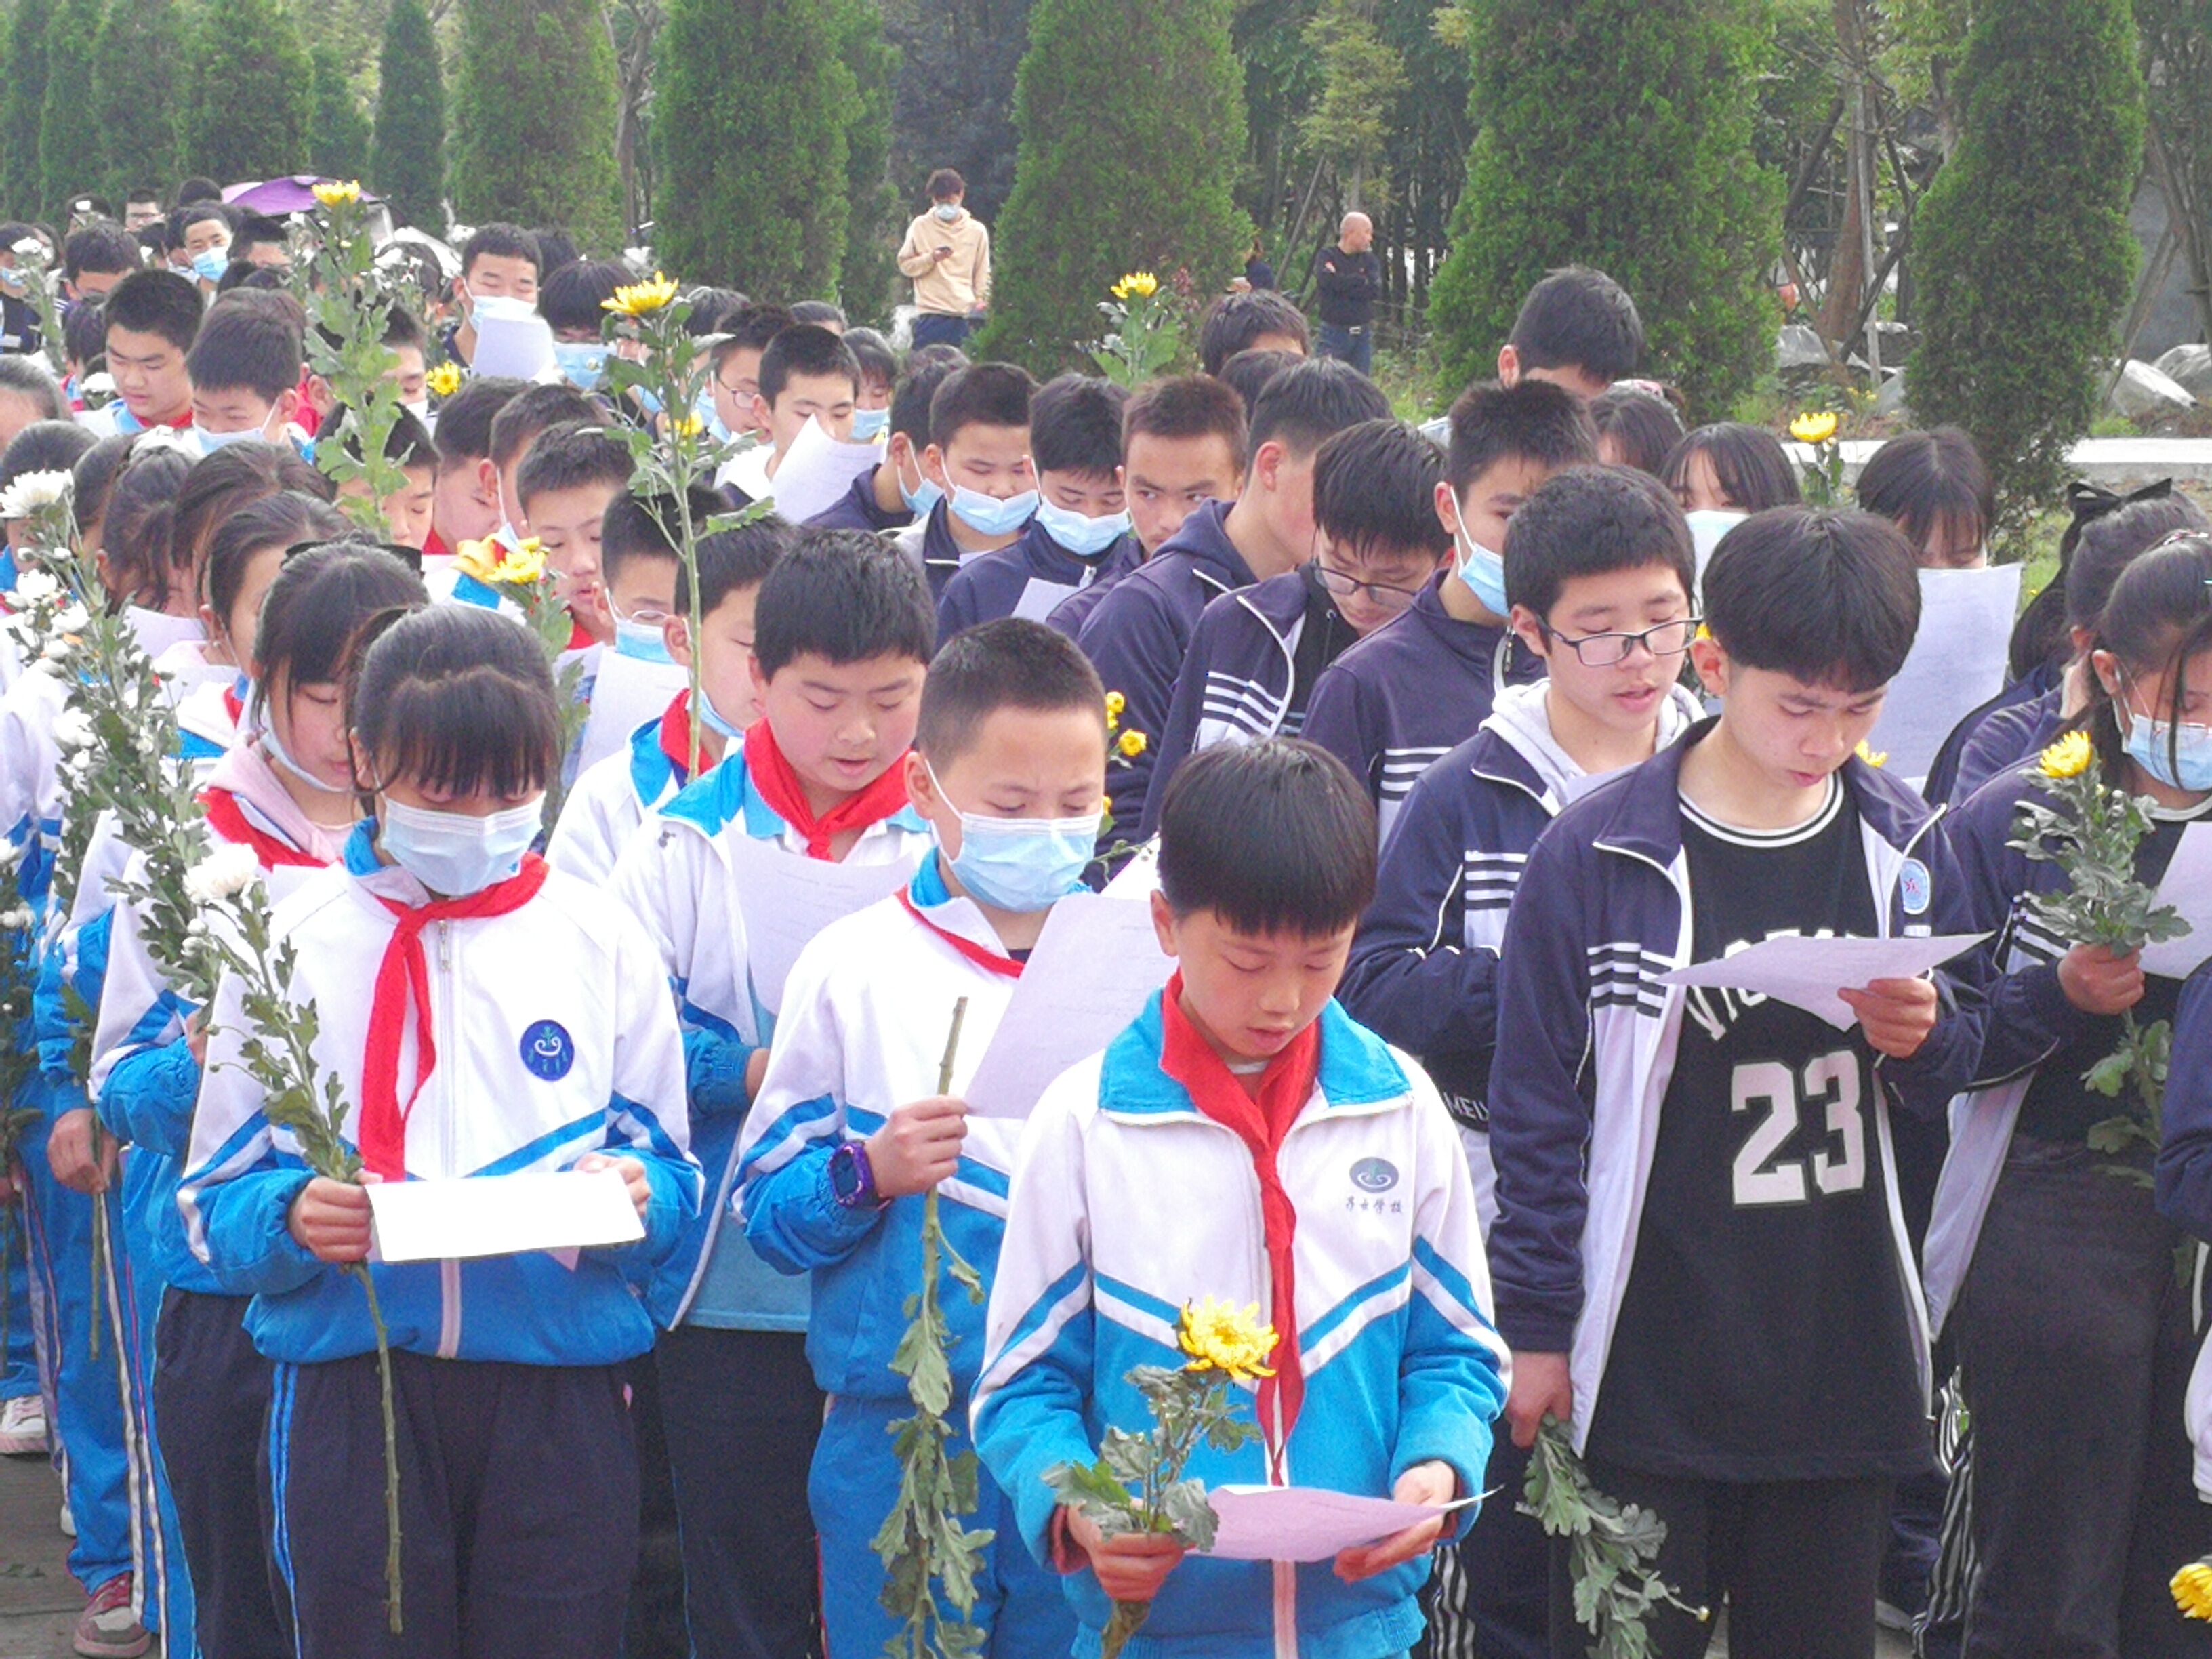 四川歷史文化名人西道孔子逝世2003周年揚雄故里舉行春祭大典